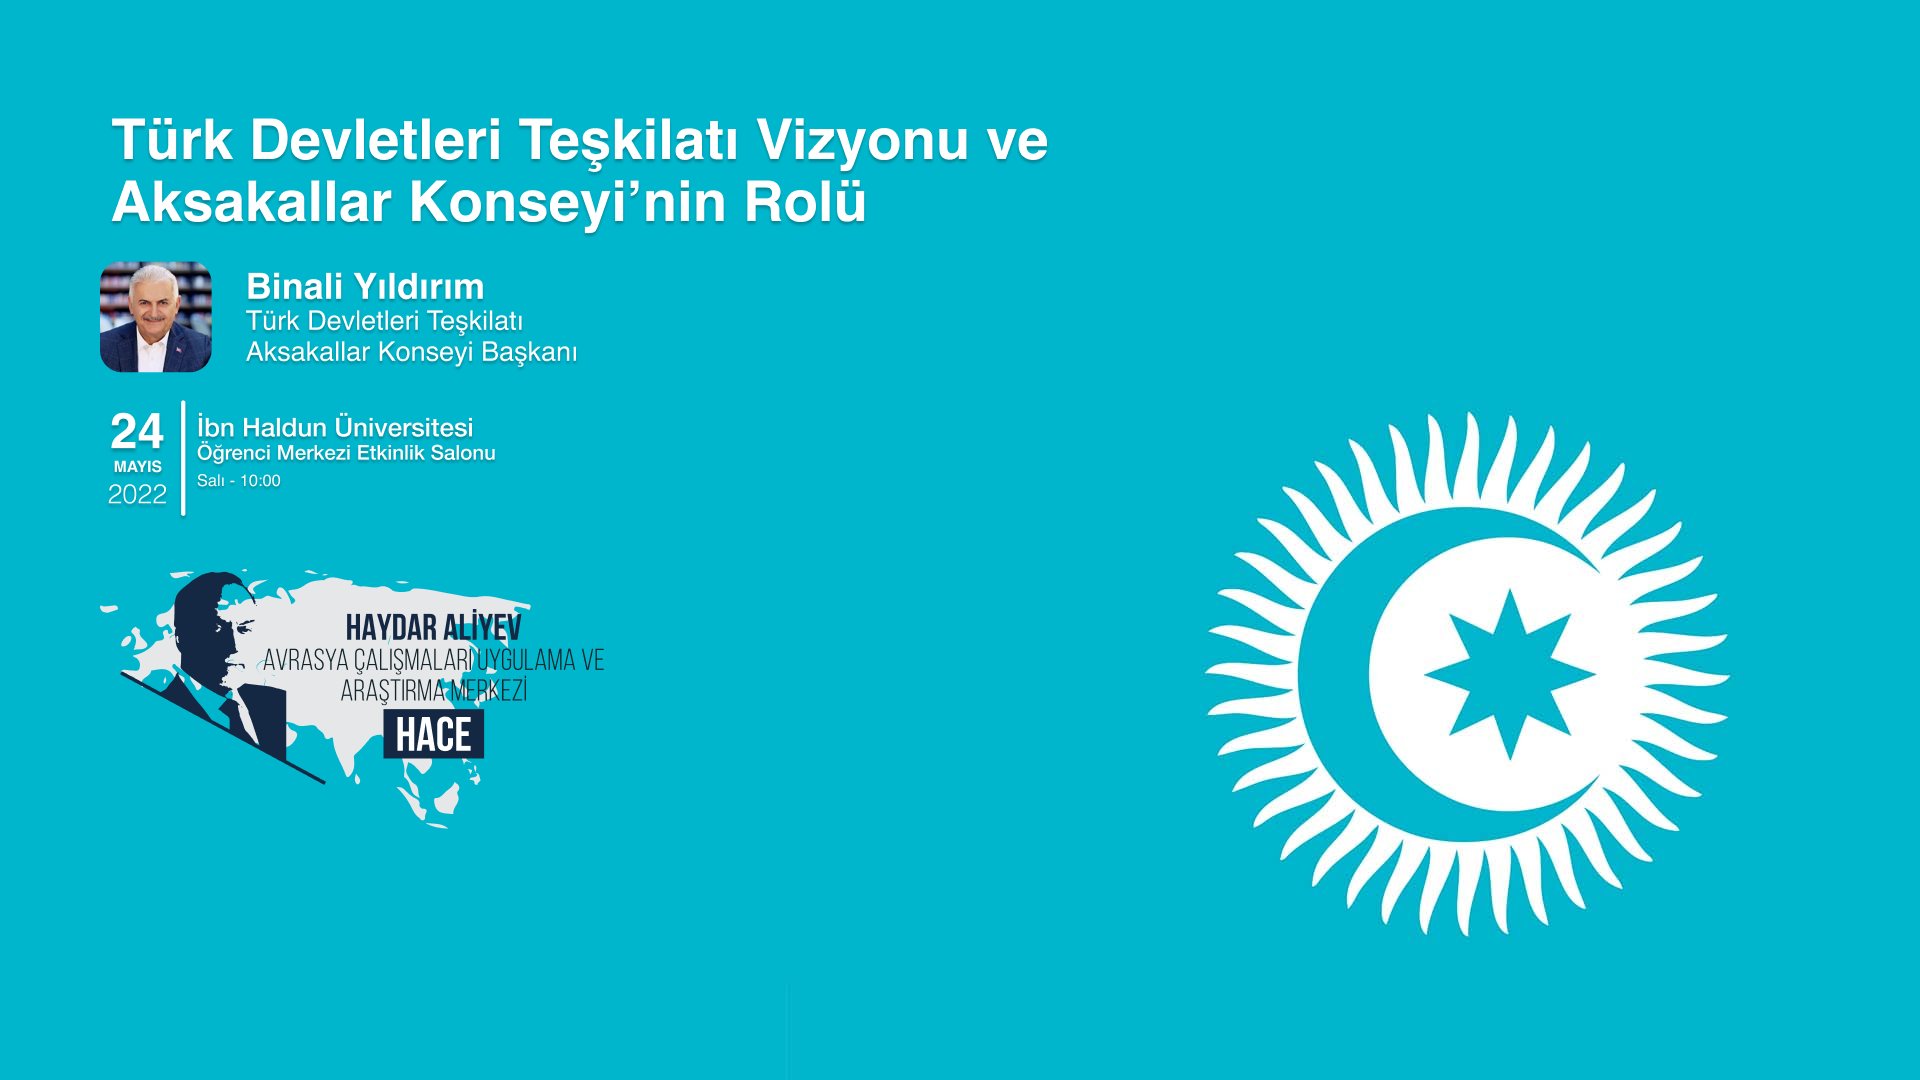 Türk Devletleri Teşkilatı Vizyonu ve Aksakallar Konseyi’nin Rolü